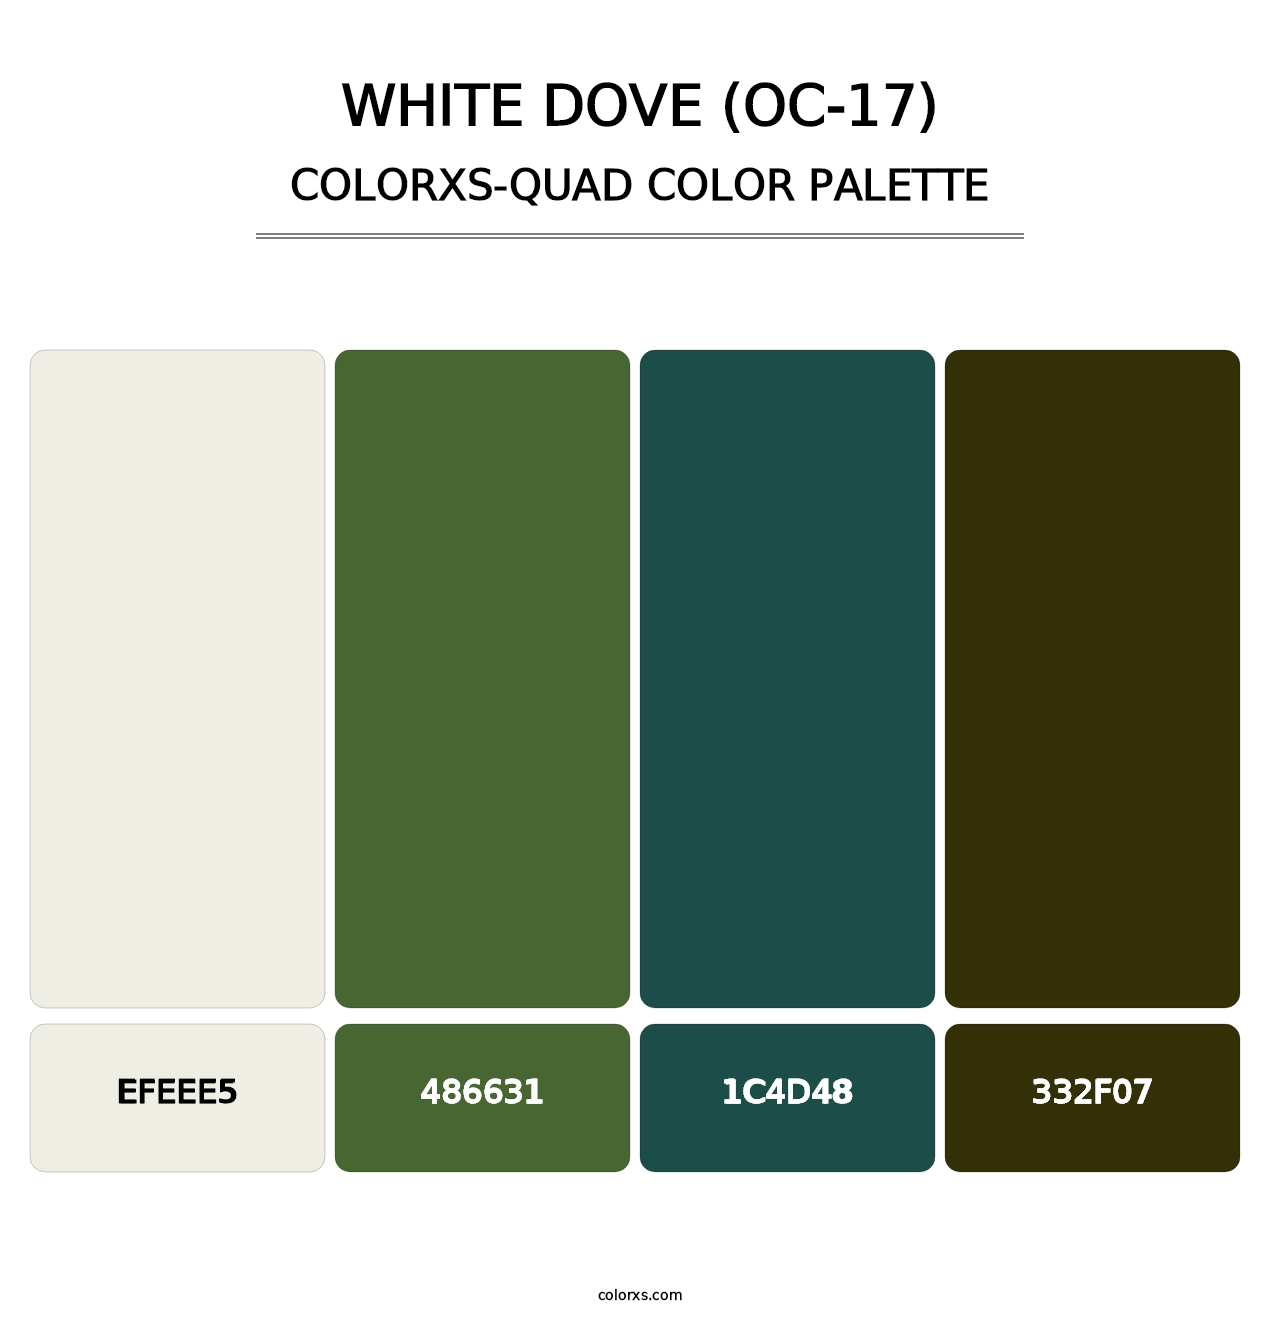 White Dove (OC-17) - Colorxs Quad Palette